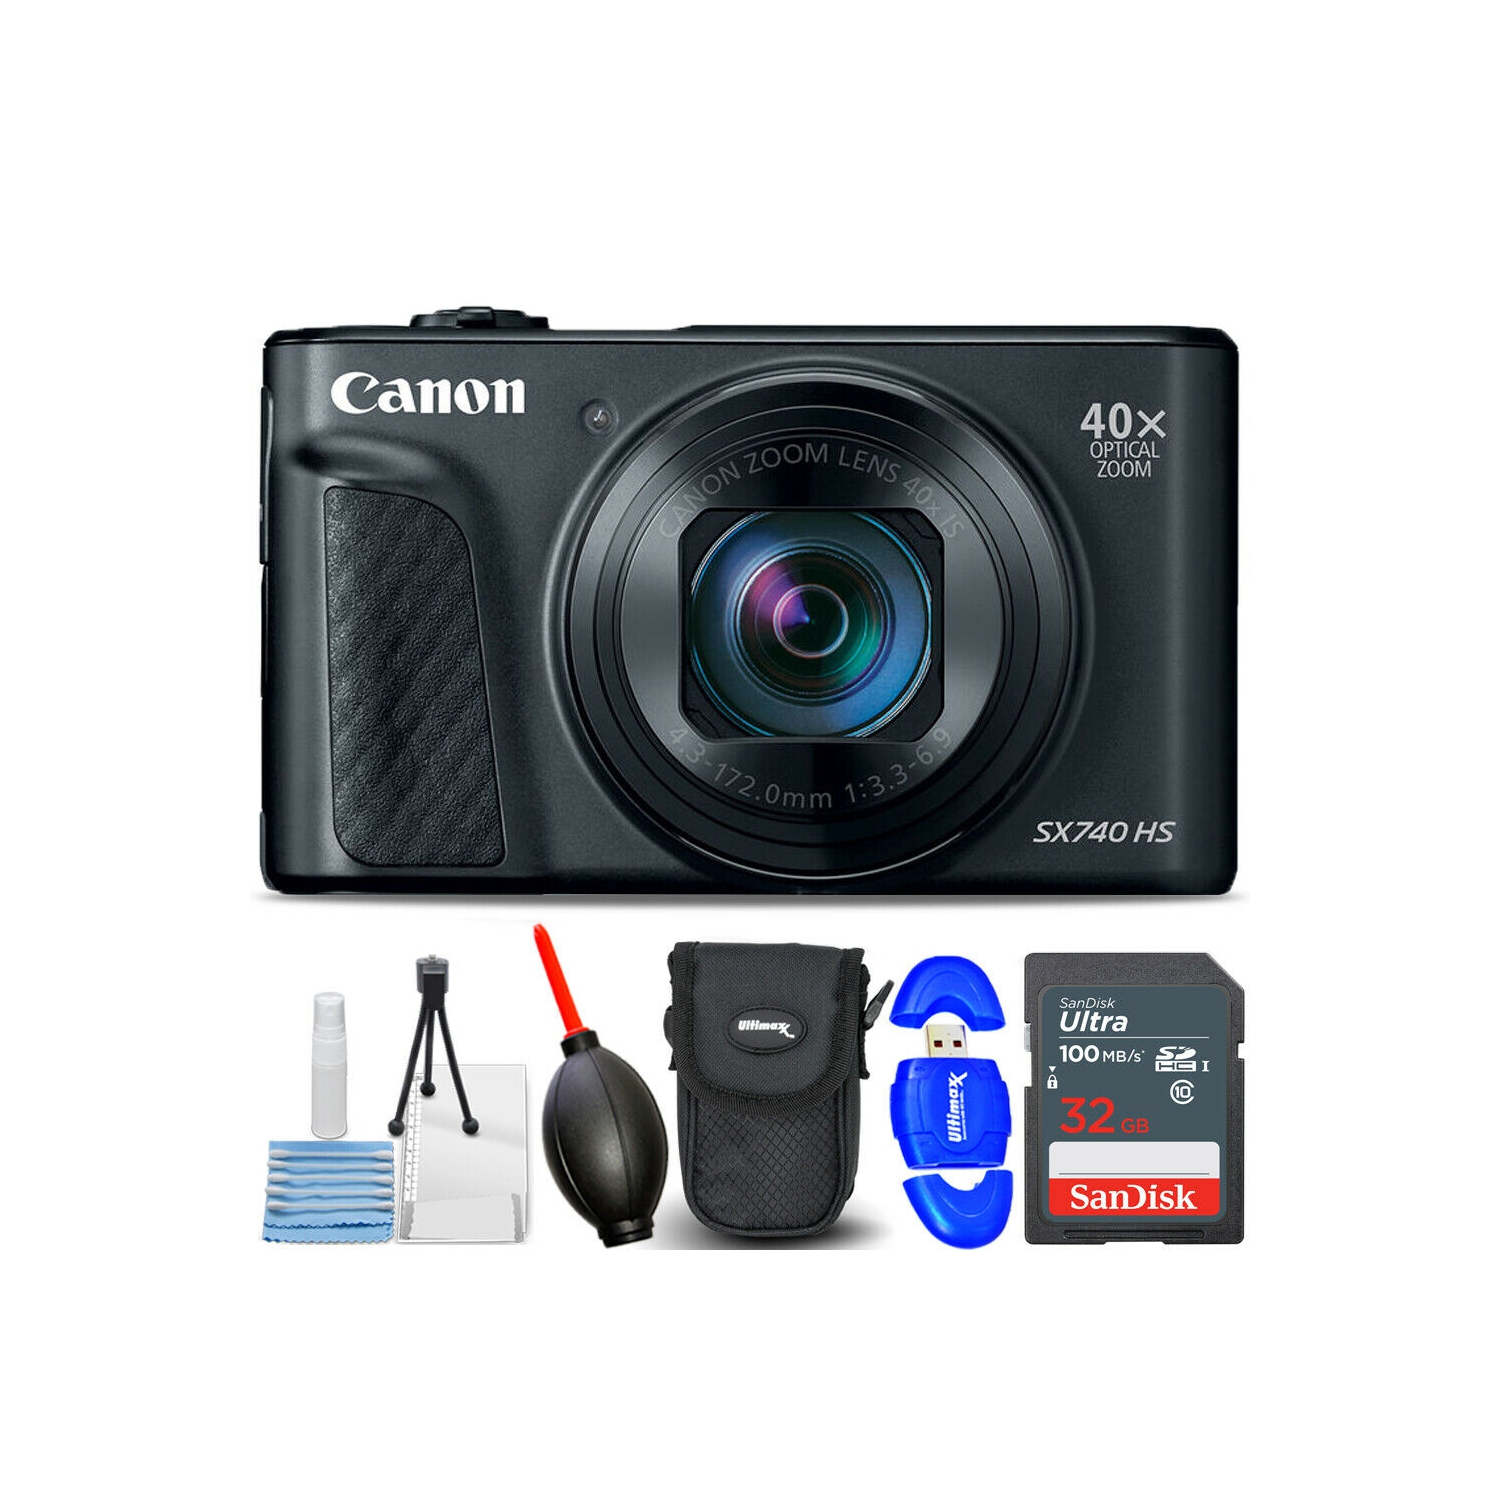 Canon PowerShot SX740 HS Digital Camera (Black) 2955C001 - 7PC Accessory Bundle